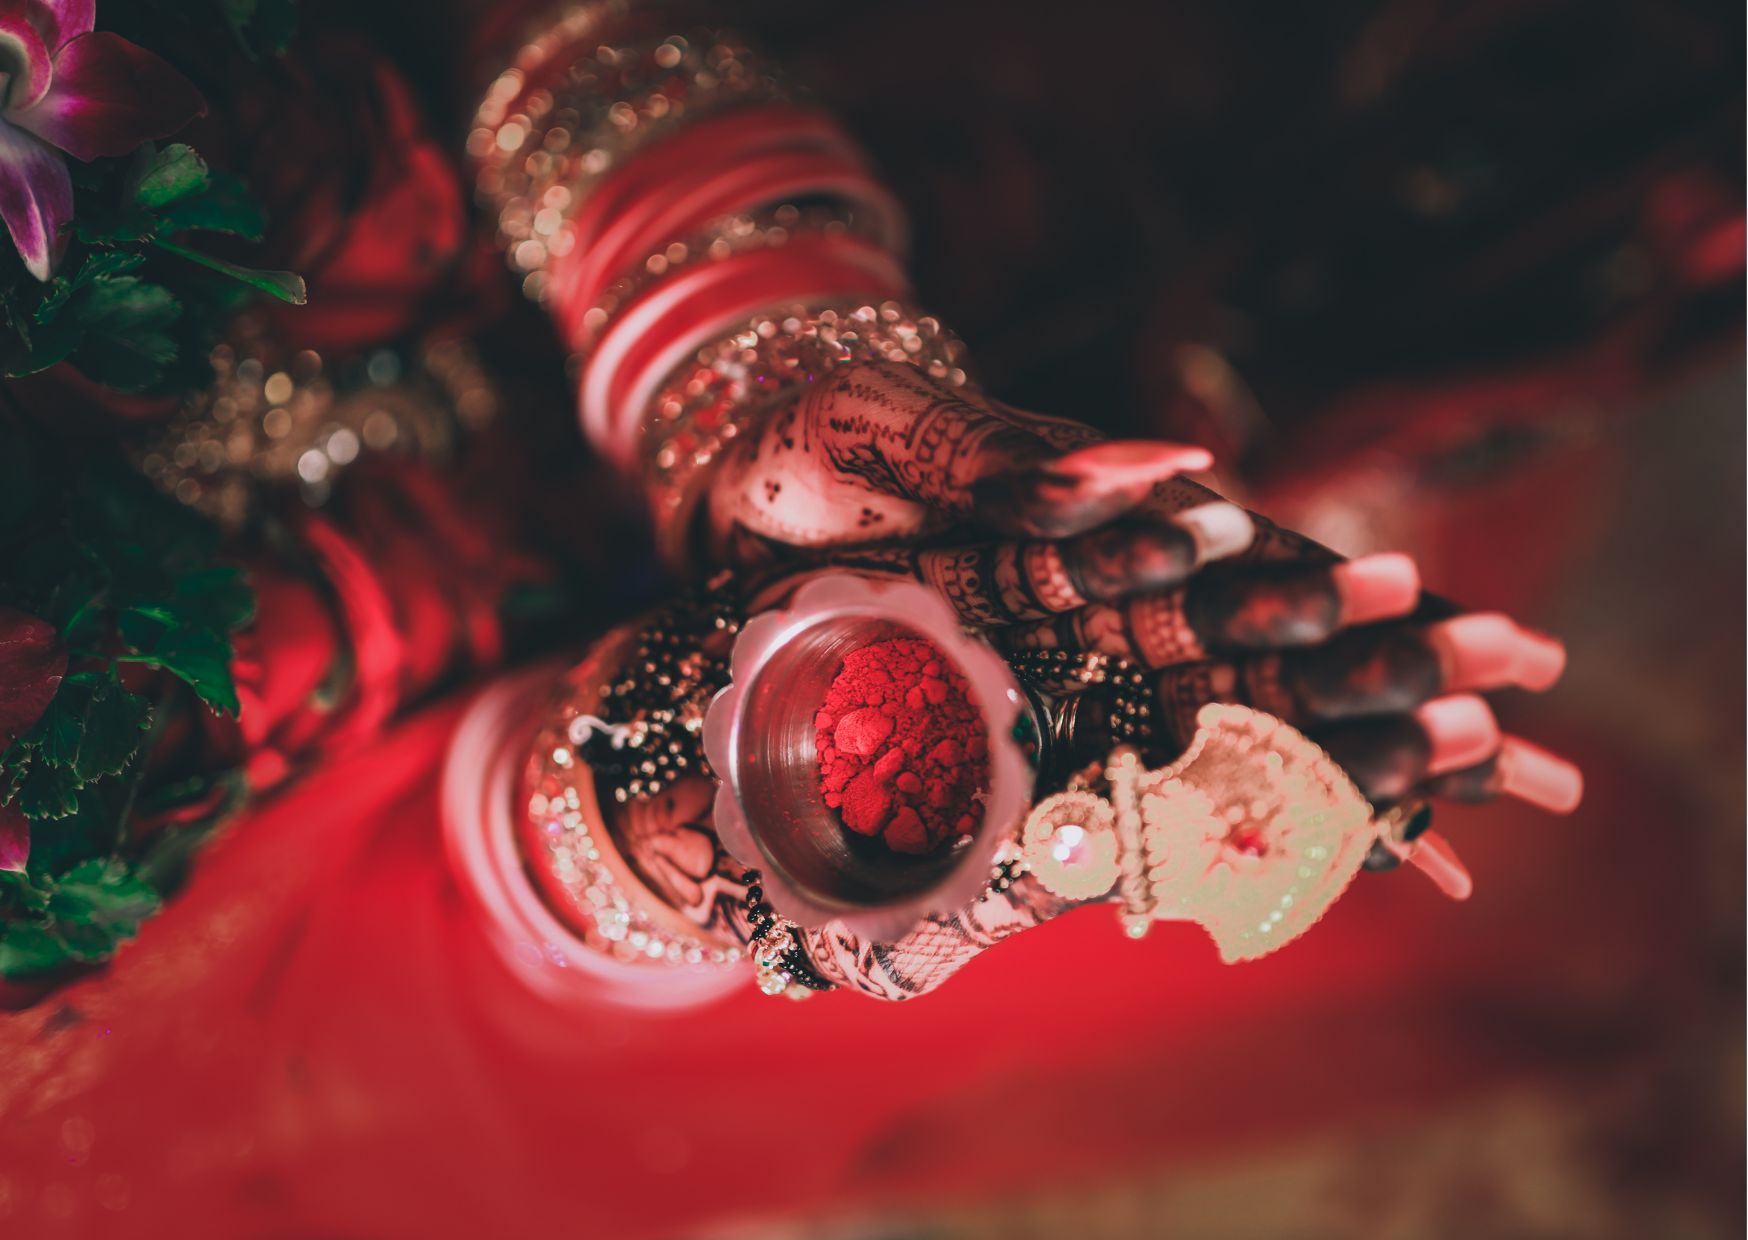 Vermillion in Odia wedding ritual